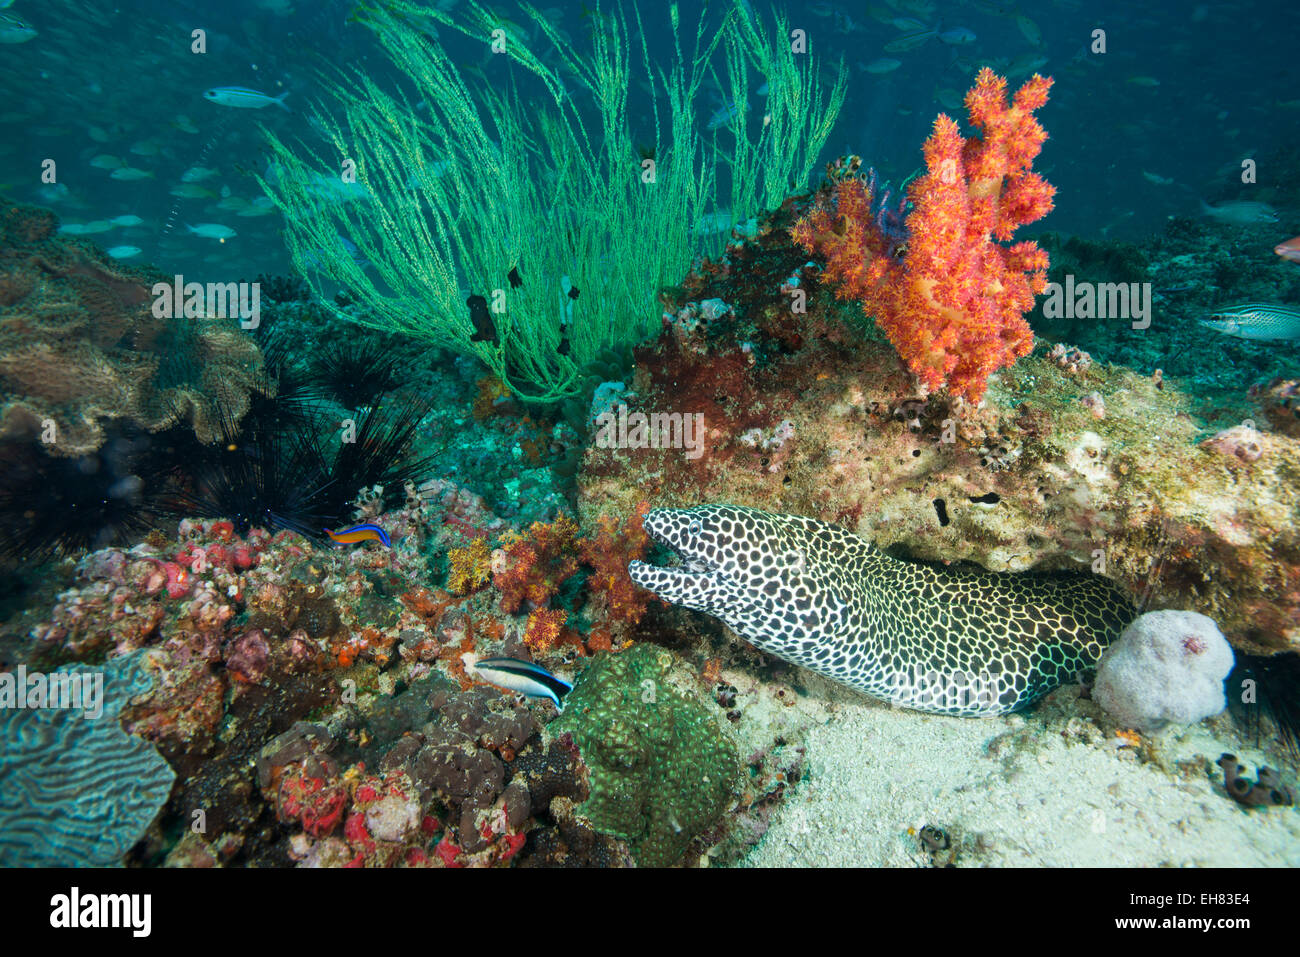 L'anguille tachetée à l'Aquarium, îles Dimaniyat, golfe d'Oman, Oman, Middle East Banque D'Images